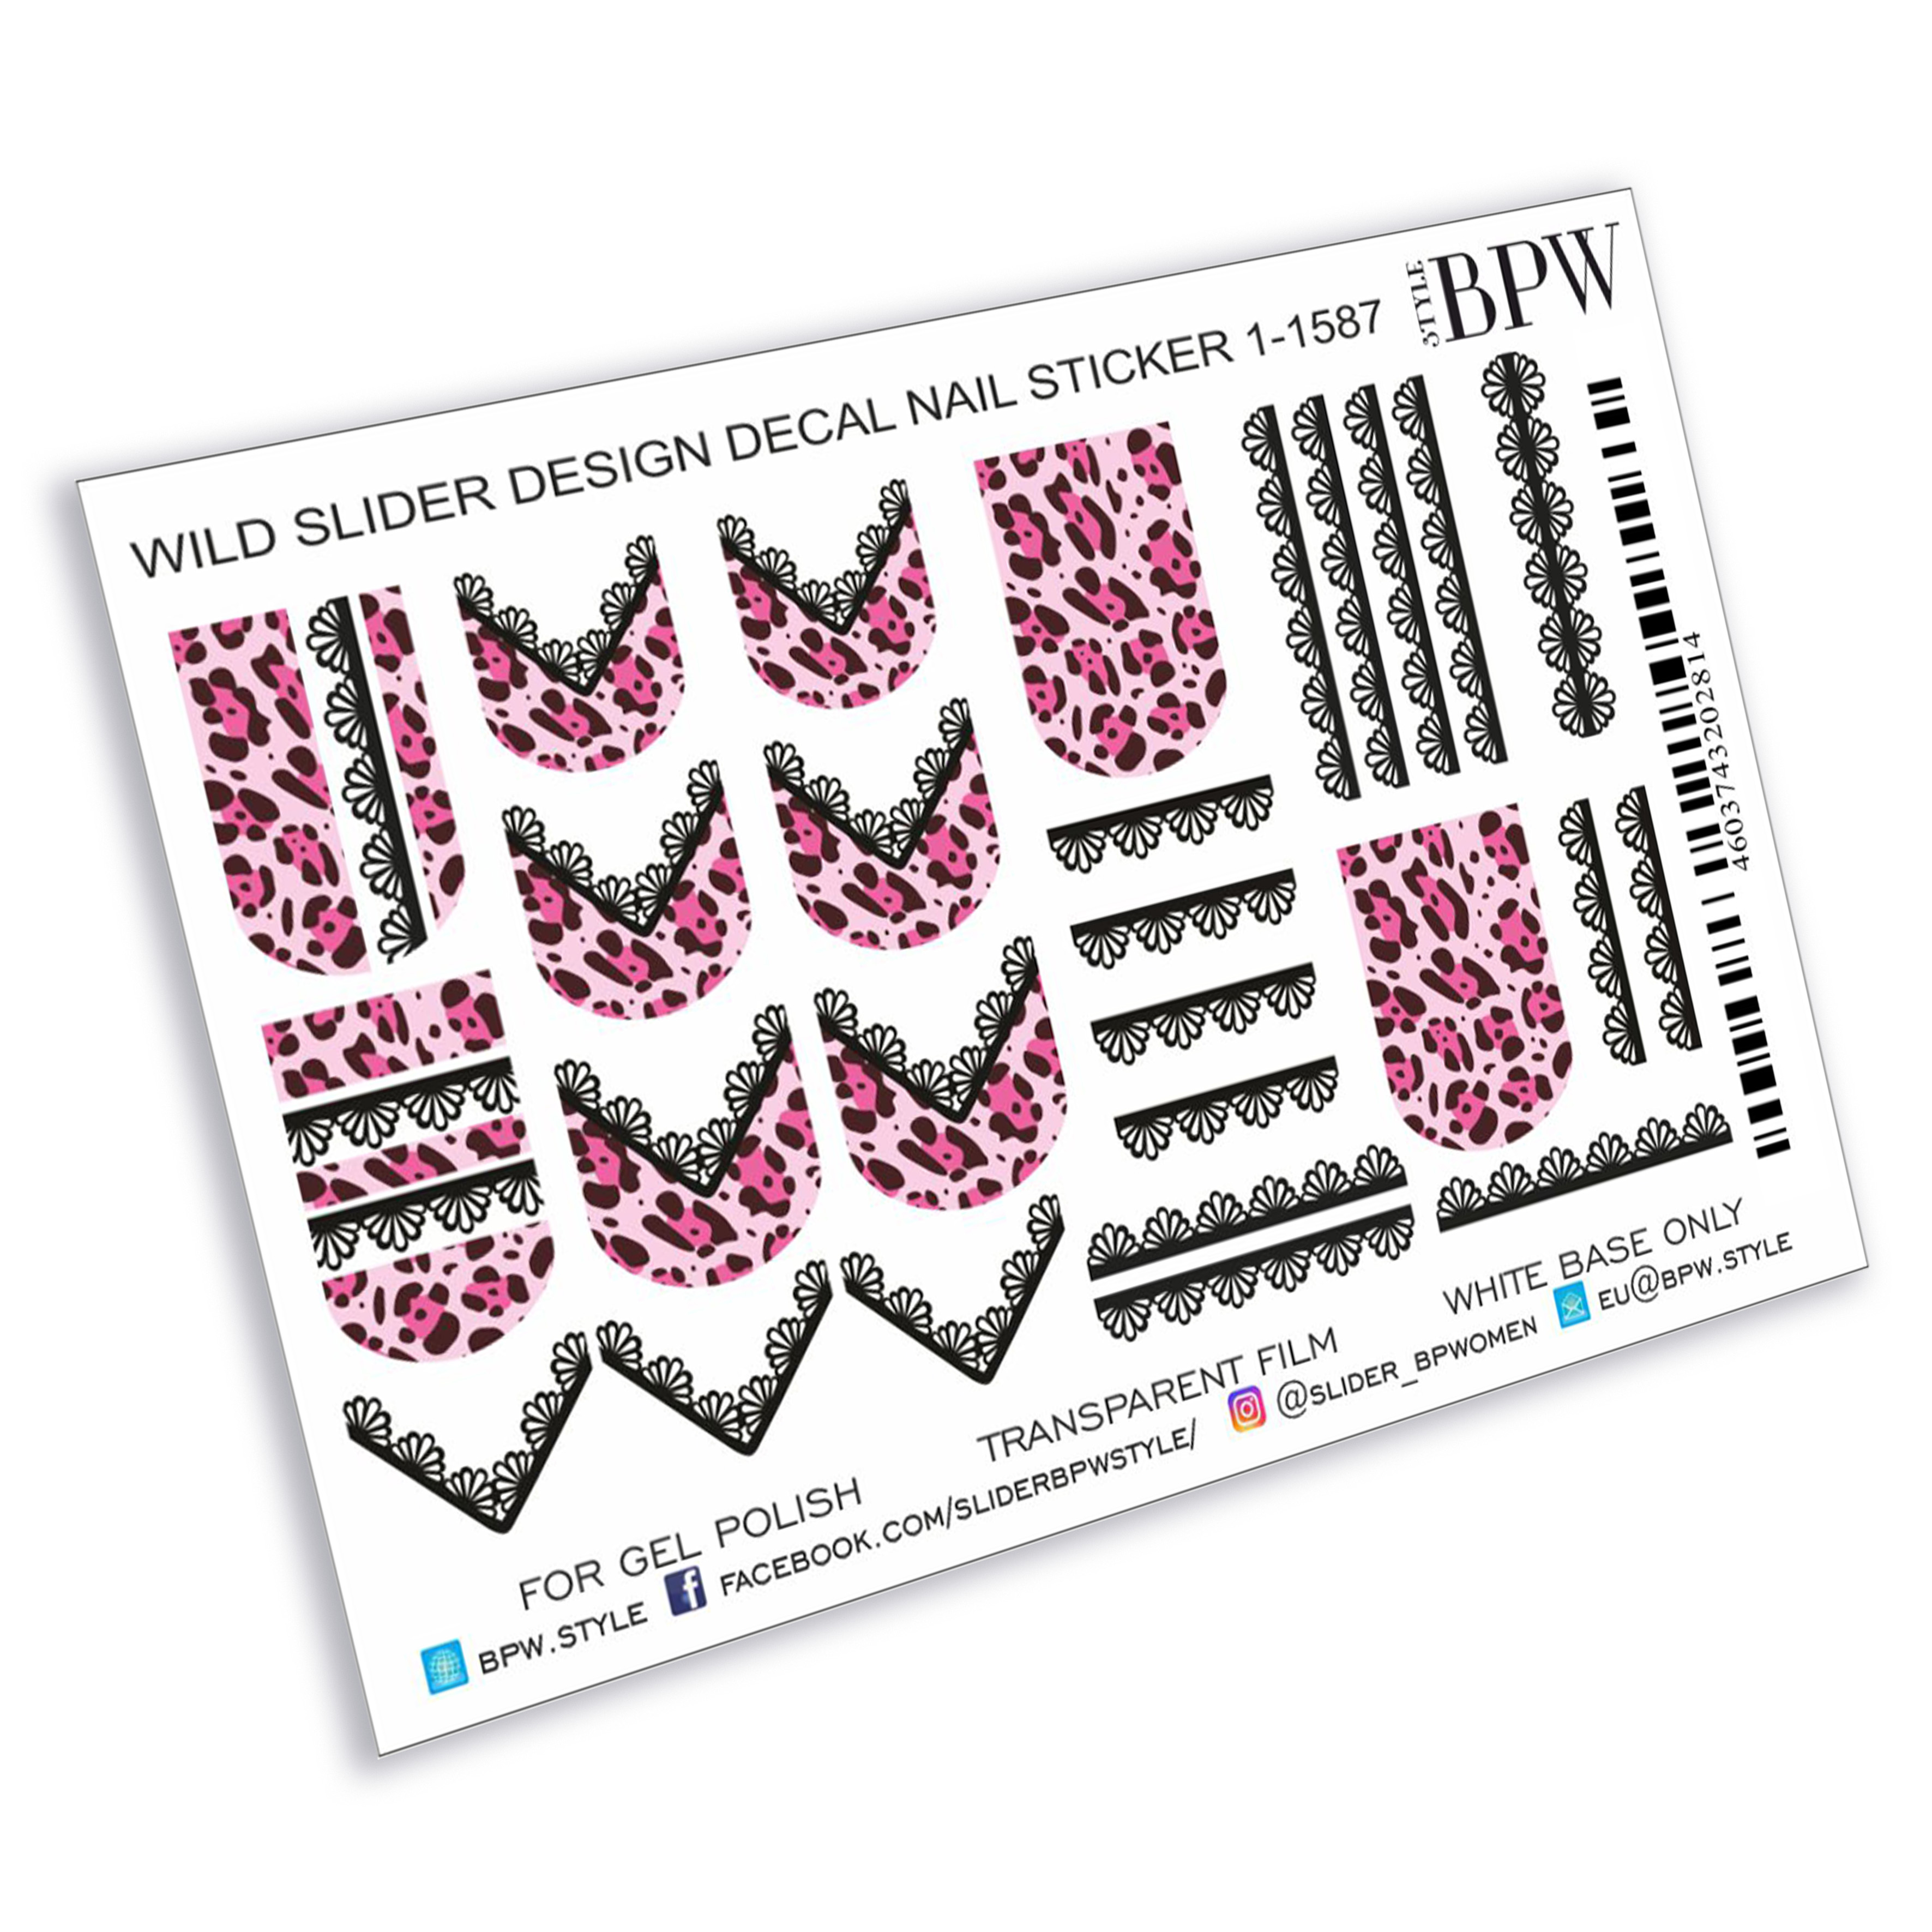 Слайдер-дизайн Розовый леопард с кружевом из каталога Слайдер дизайн для ногтей в интернет-магазине BPW.style